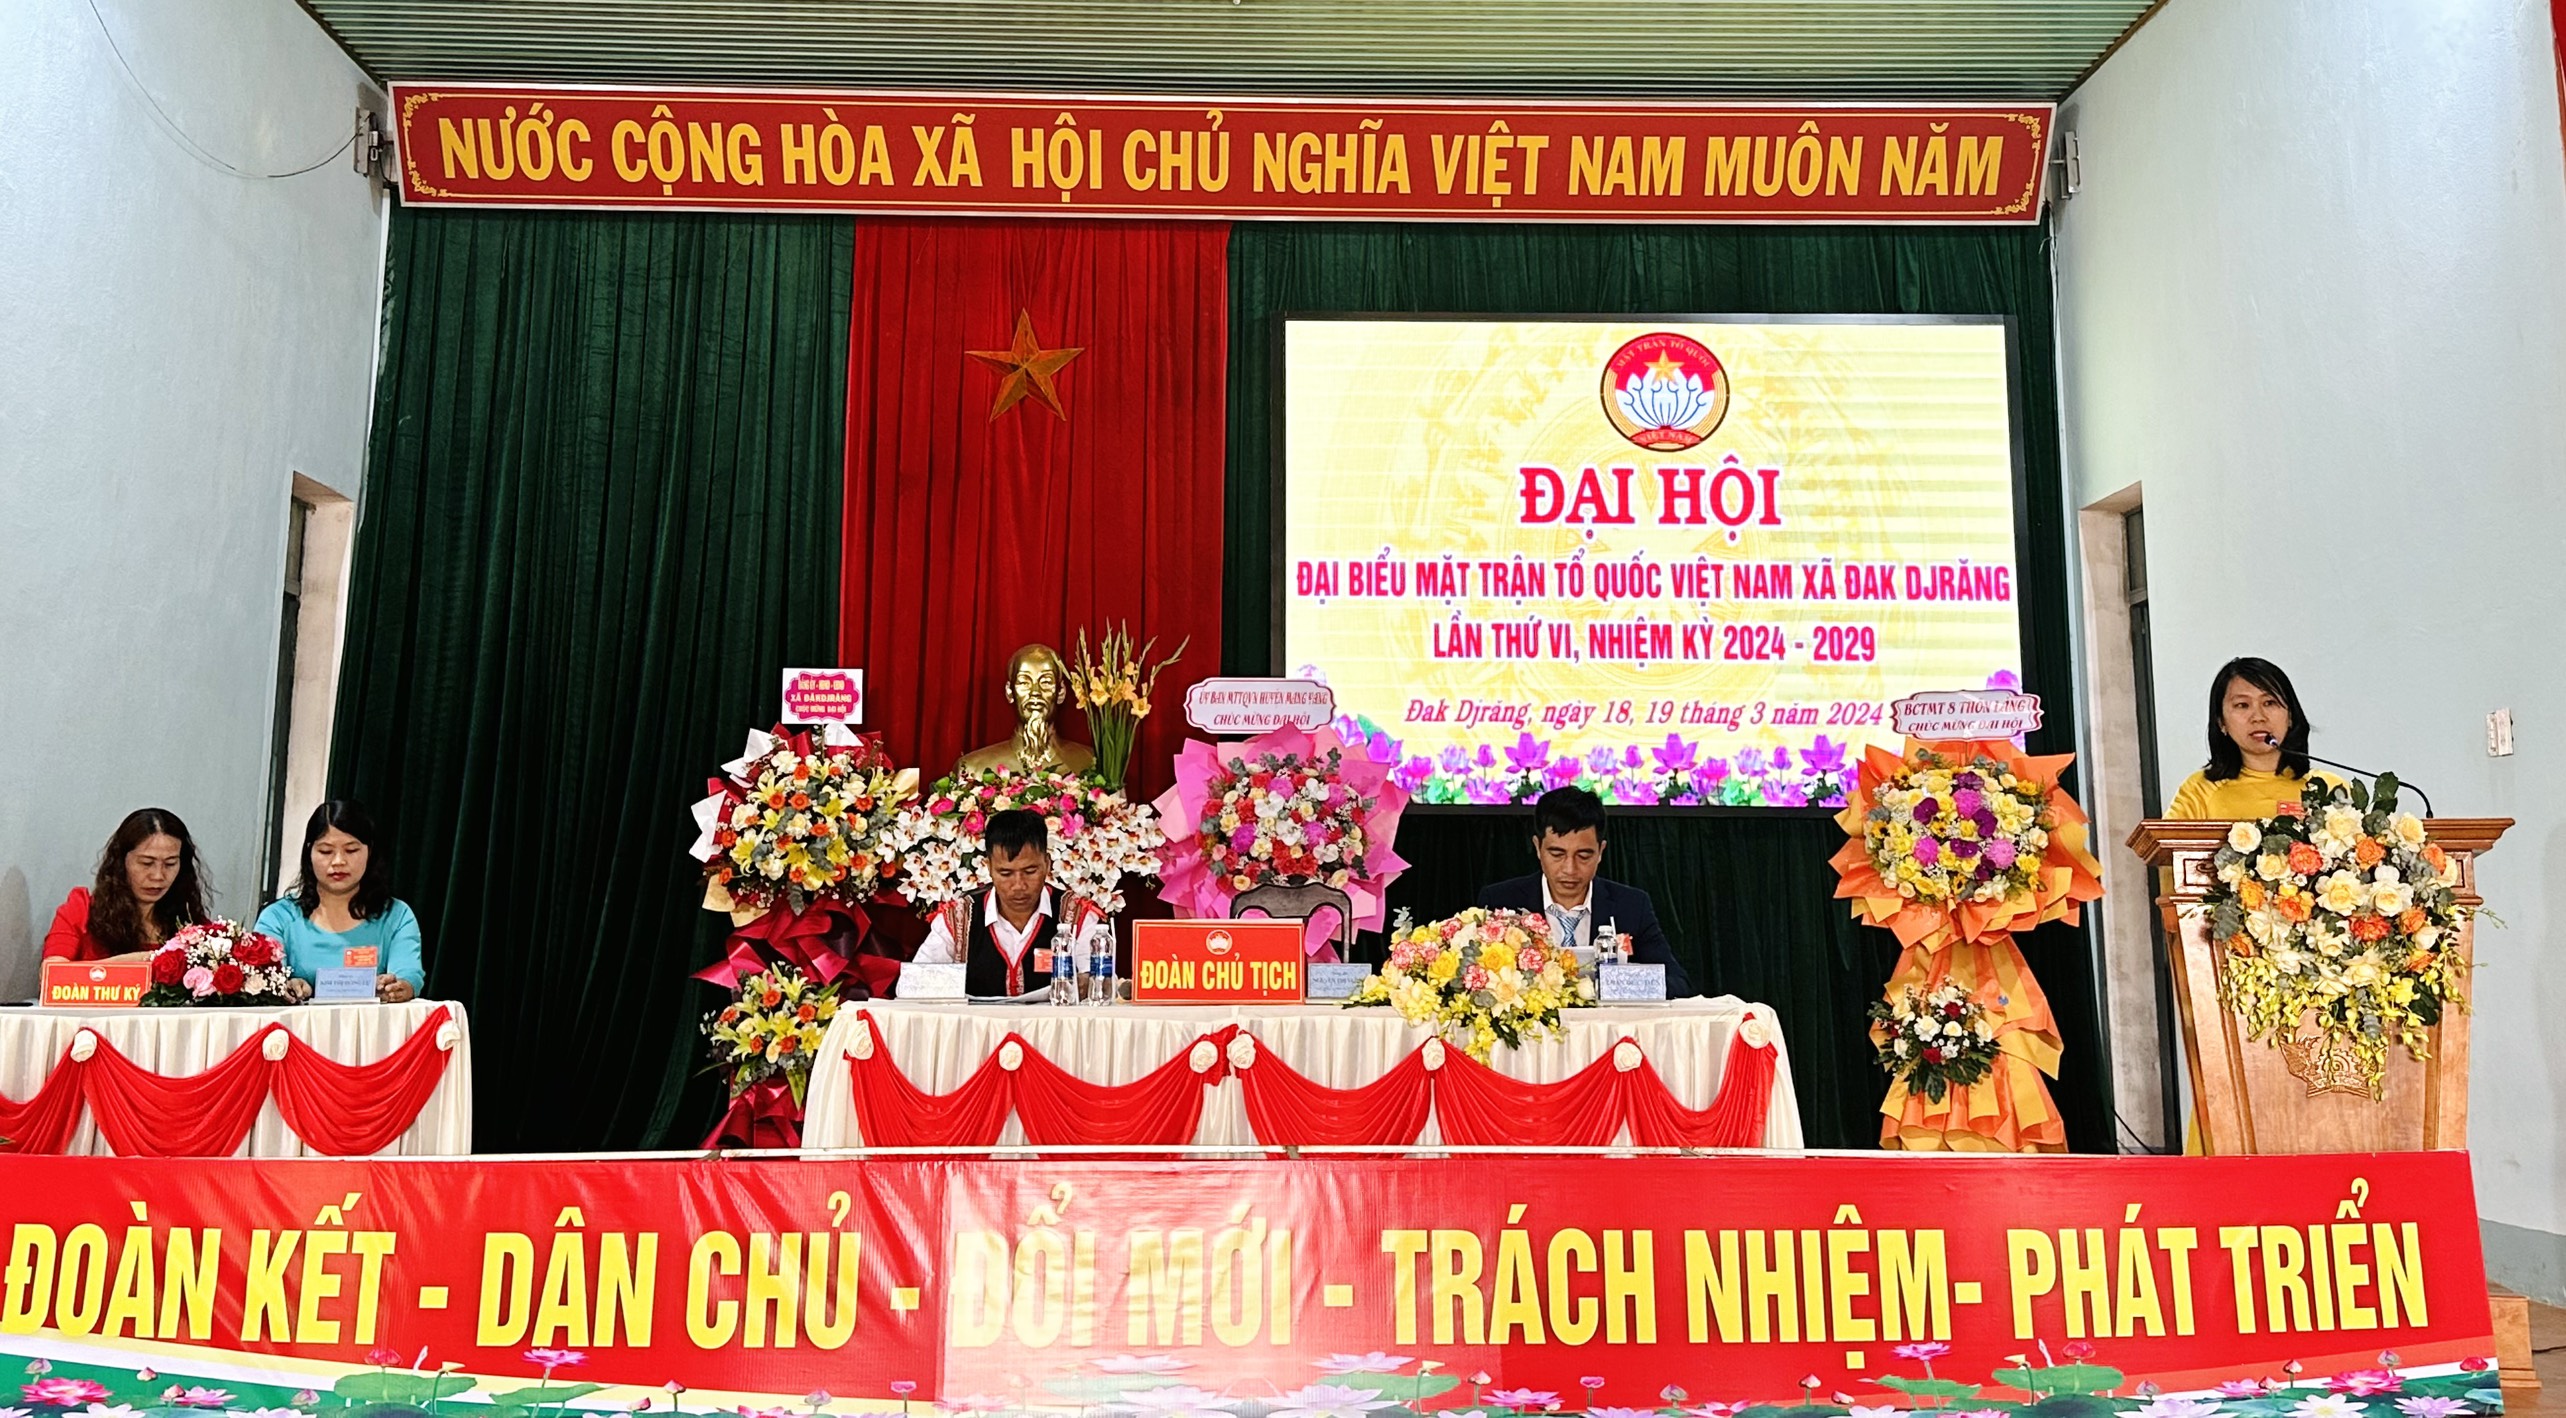 Article Đại hội đại biểu MTTQ Việt Nam xã Đak Djrăng lần thứ VI, nhiệm kỳ 2024 - 2029